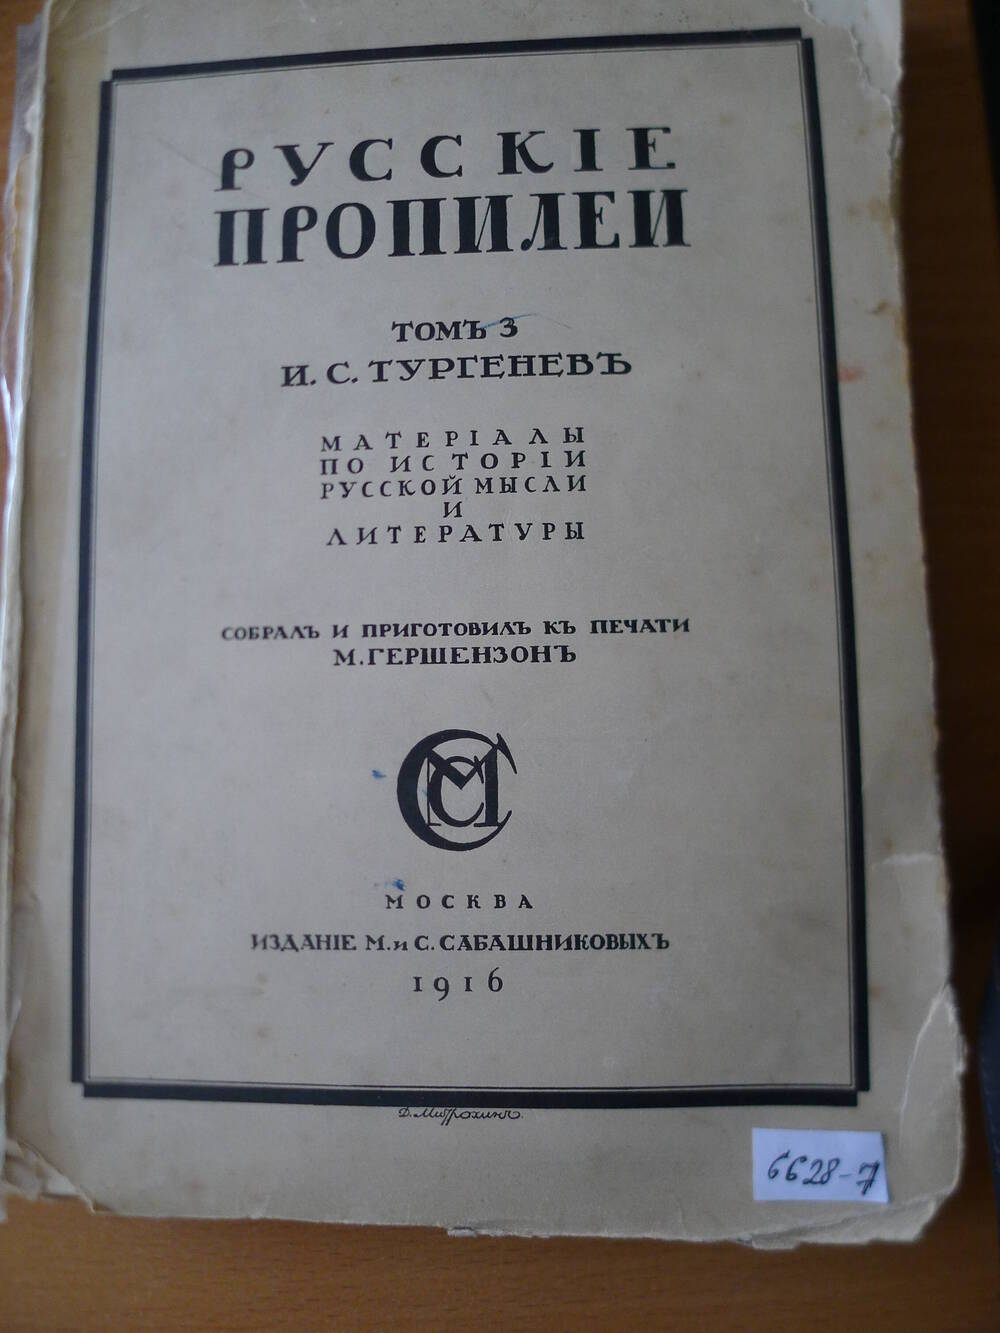 И.С. Тургенев Русские пропилеи, М.1916